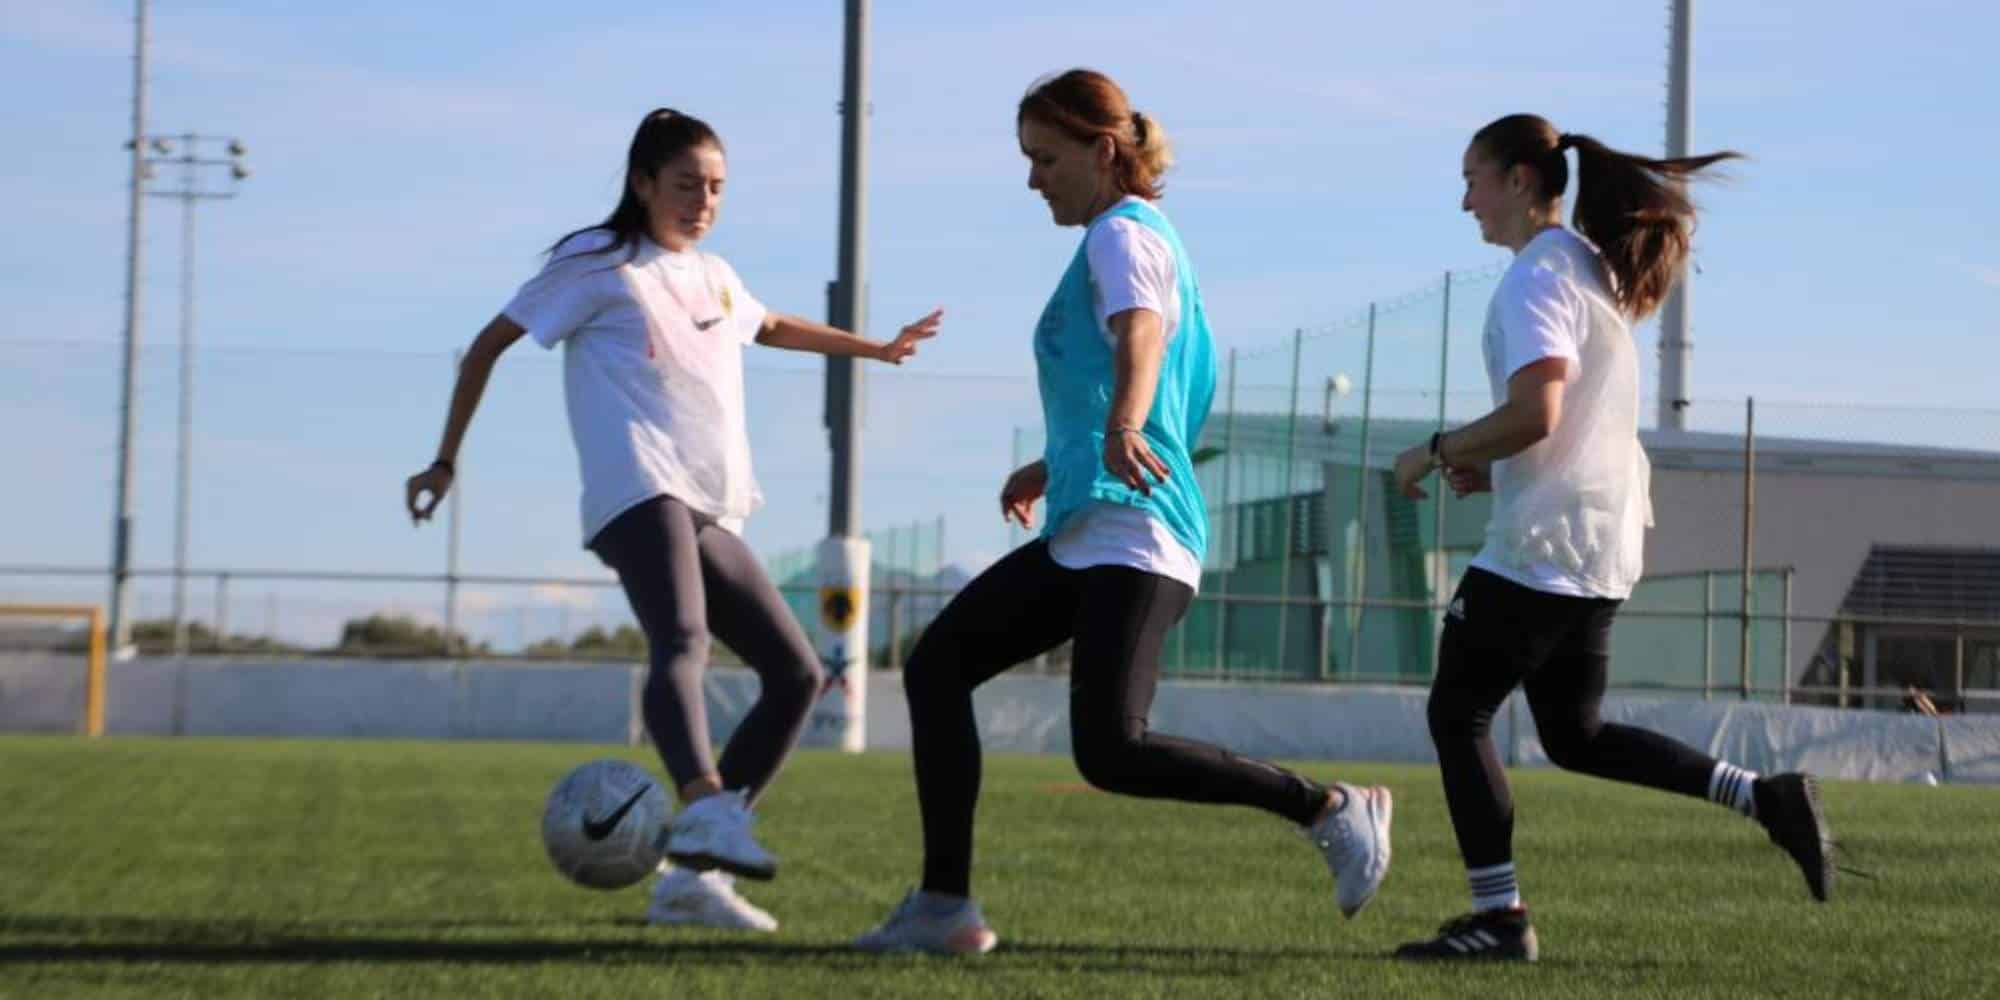 Το Girl Power, είναι ένας διεθνής Αθλητικός Οργανισμός με έδρα τη Δανία που ιδρύθηκε το 2014 από την Khalida Popal,